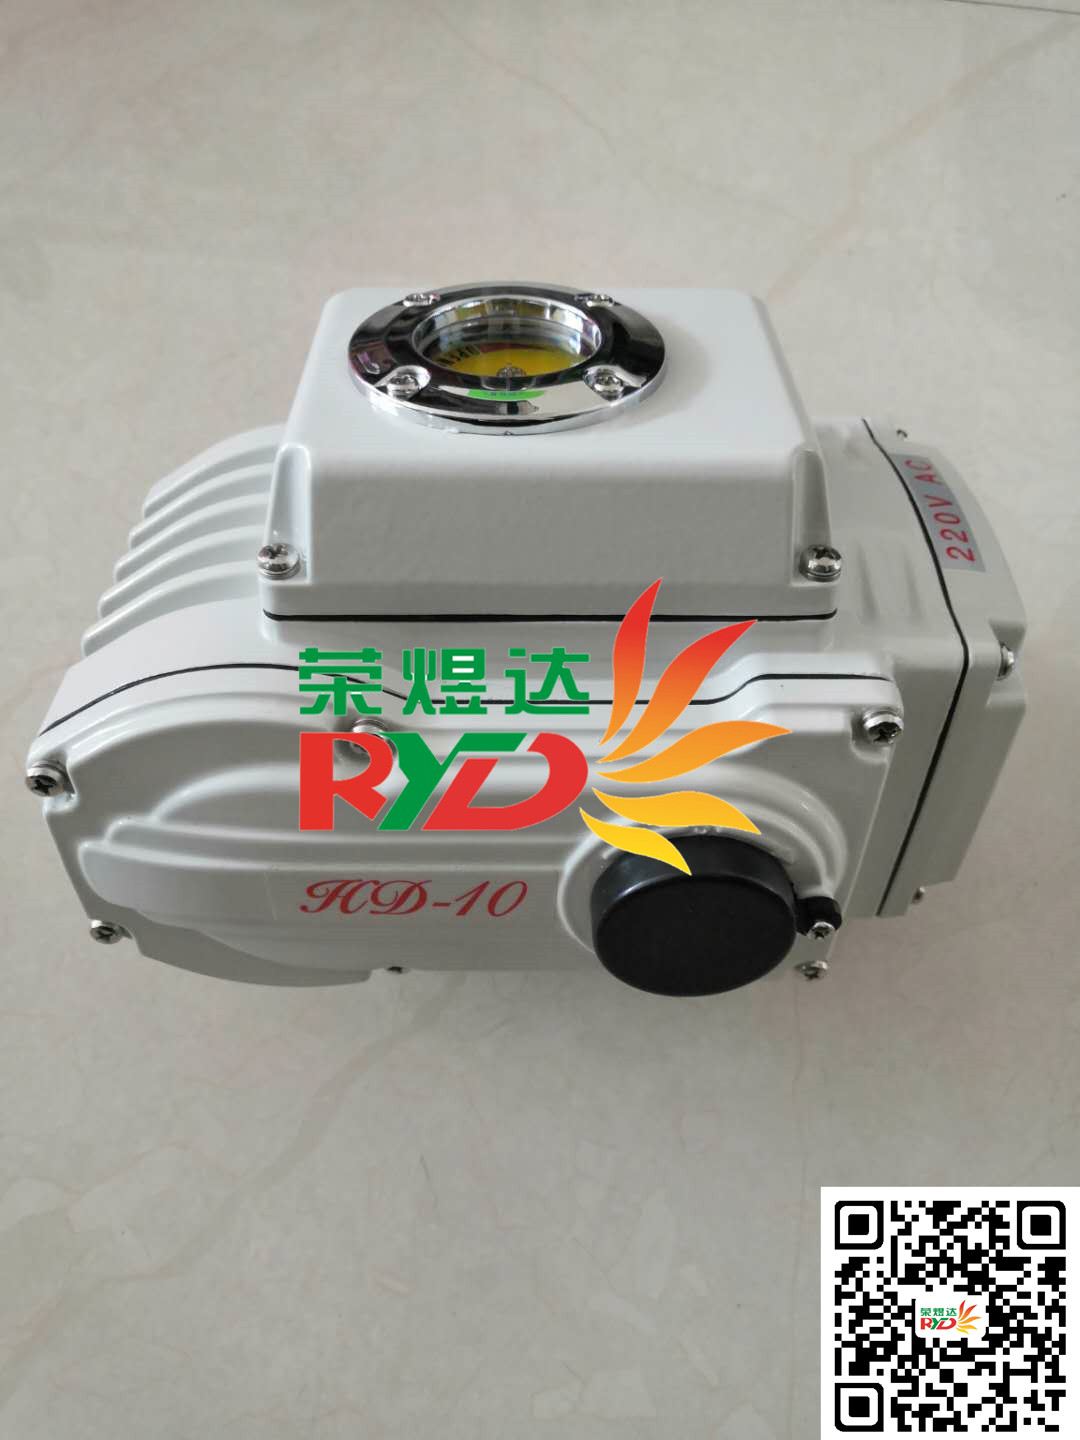 广州市HD-10电动执行器价格，电动执行器厂家图片